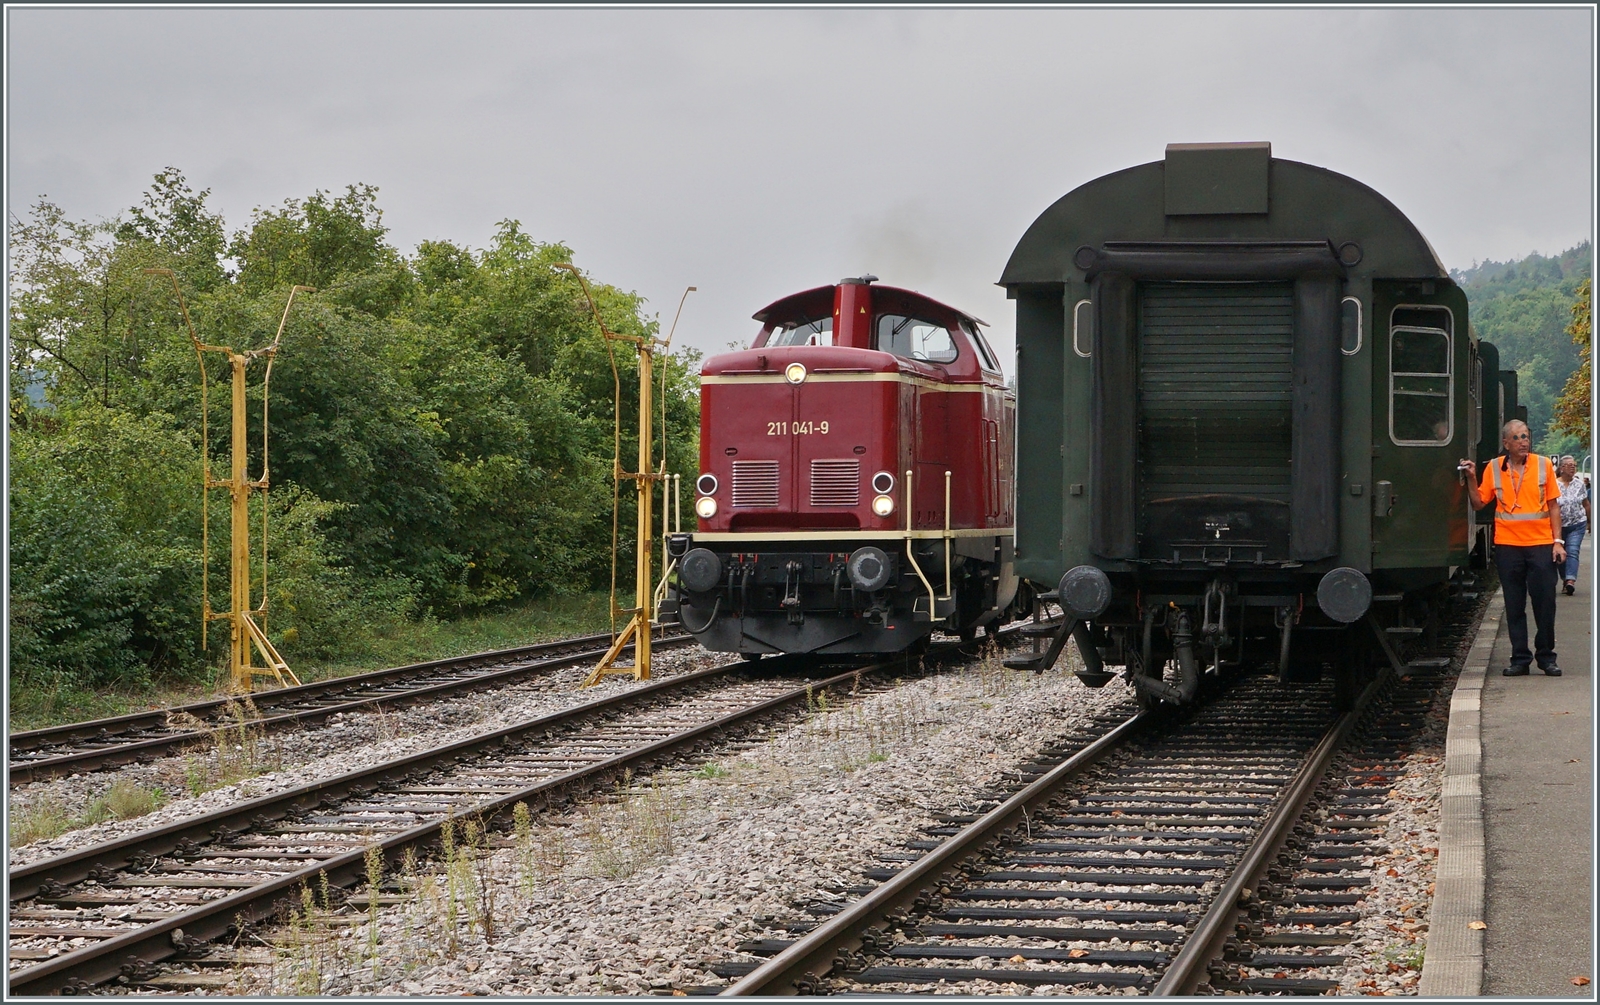 Die 211 041-9 (92 80 1211 041-9 D-NeSA) rangiert in Weizen um mit ihrem Zug nach Zollhaus Blumberg zurück zu fahren. 

27.08.2022